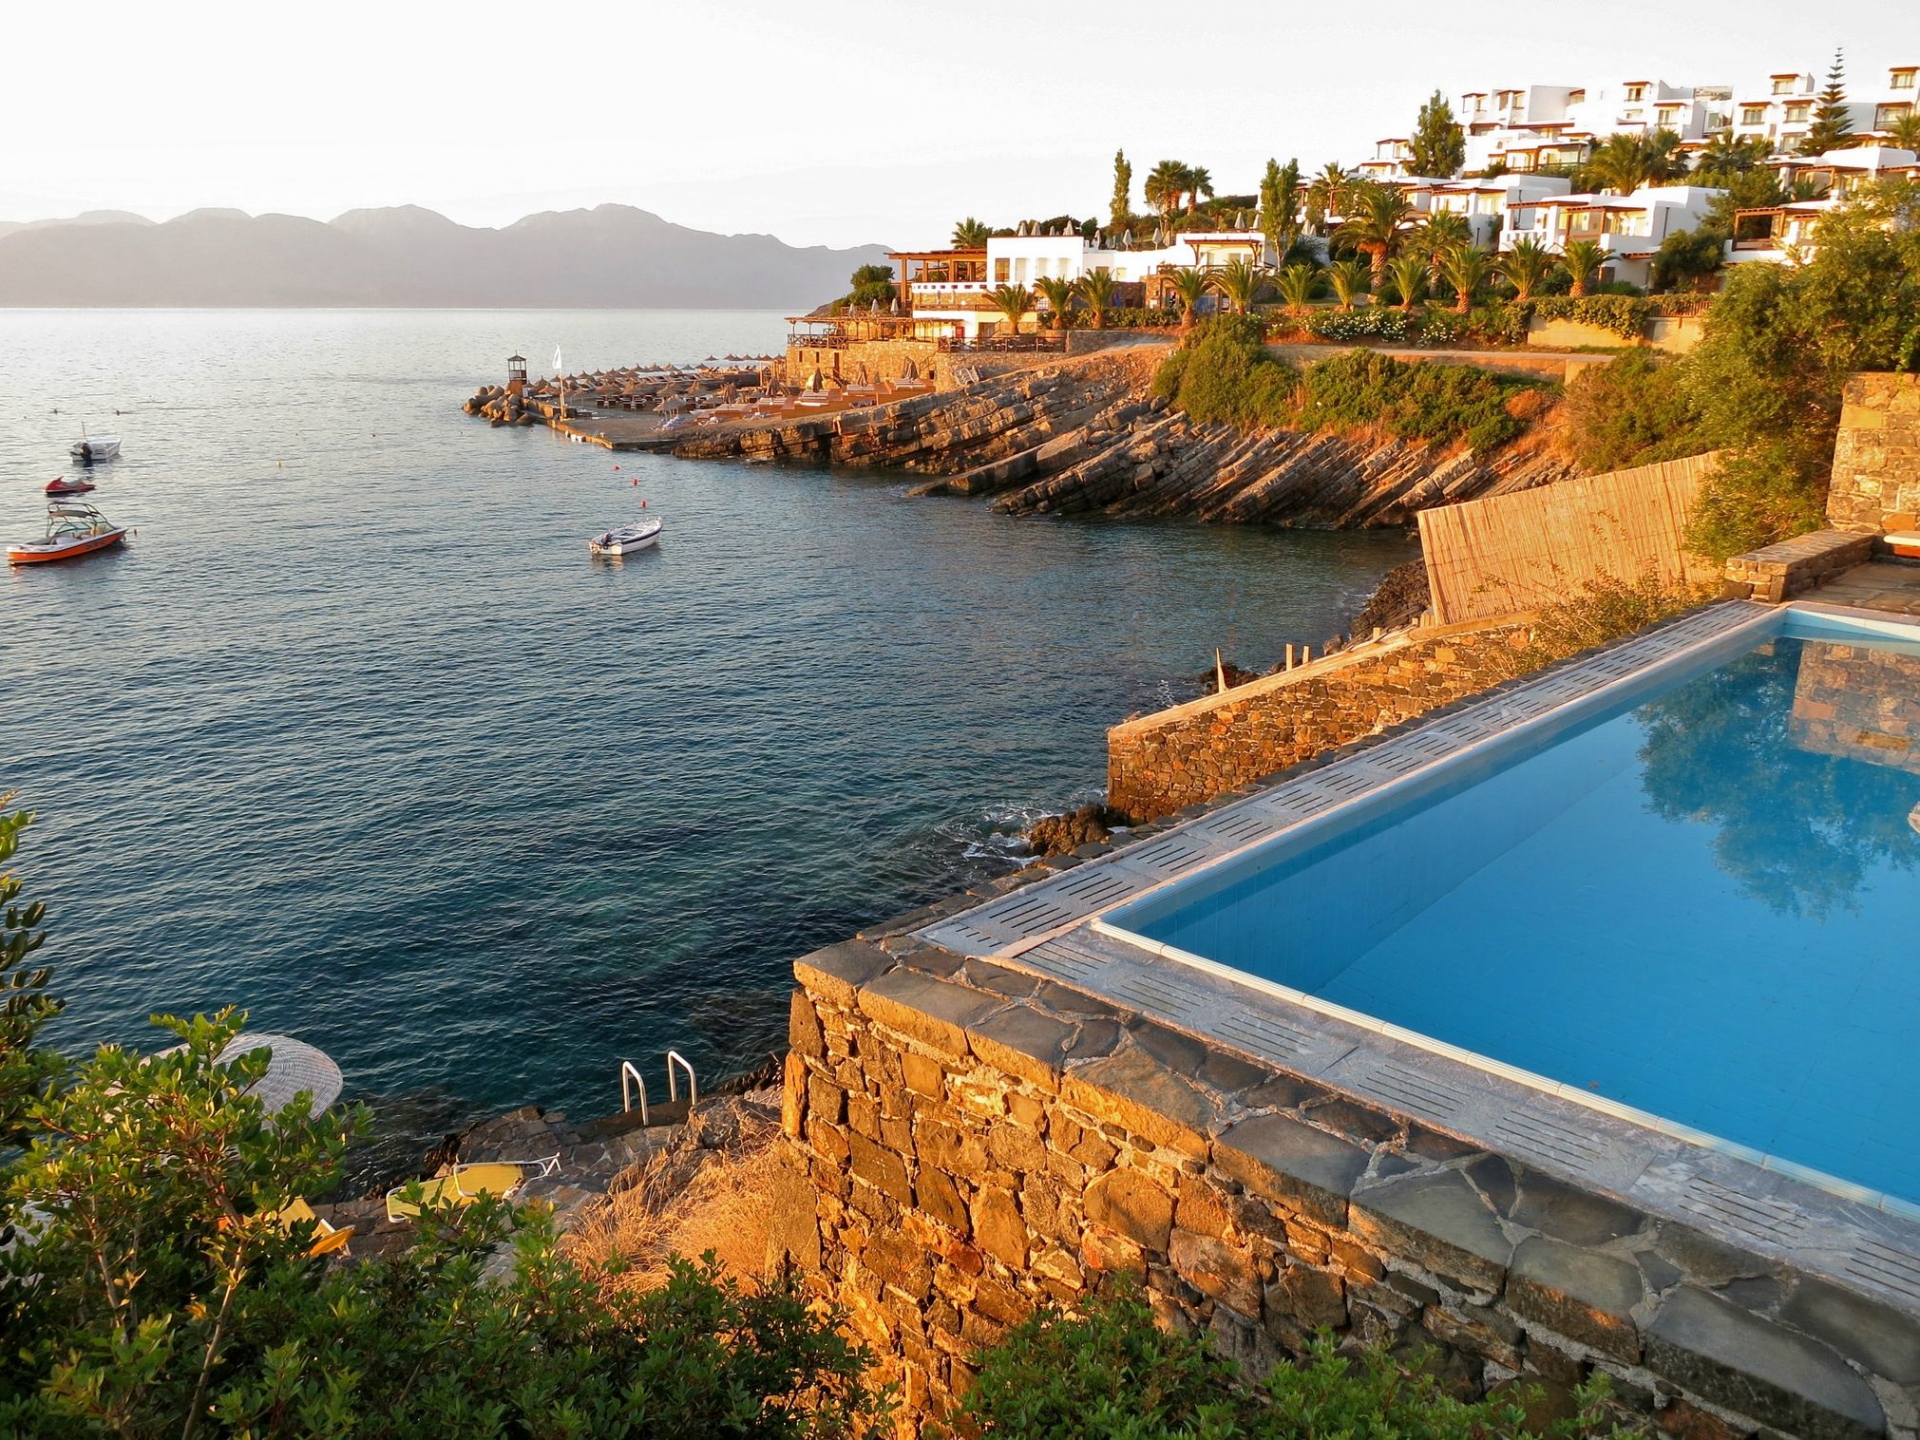 Một hồ bơi hình chữ nhật nhìn ra biển trong ngôi làng nhỏ trên đảo Crete của Hy Lạp tạo cảm giác chân thực như thiên nhiên và con người cùng hòa vào làm một.